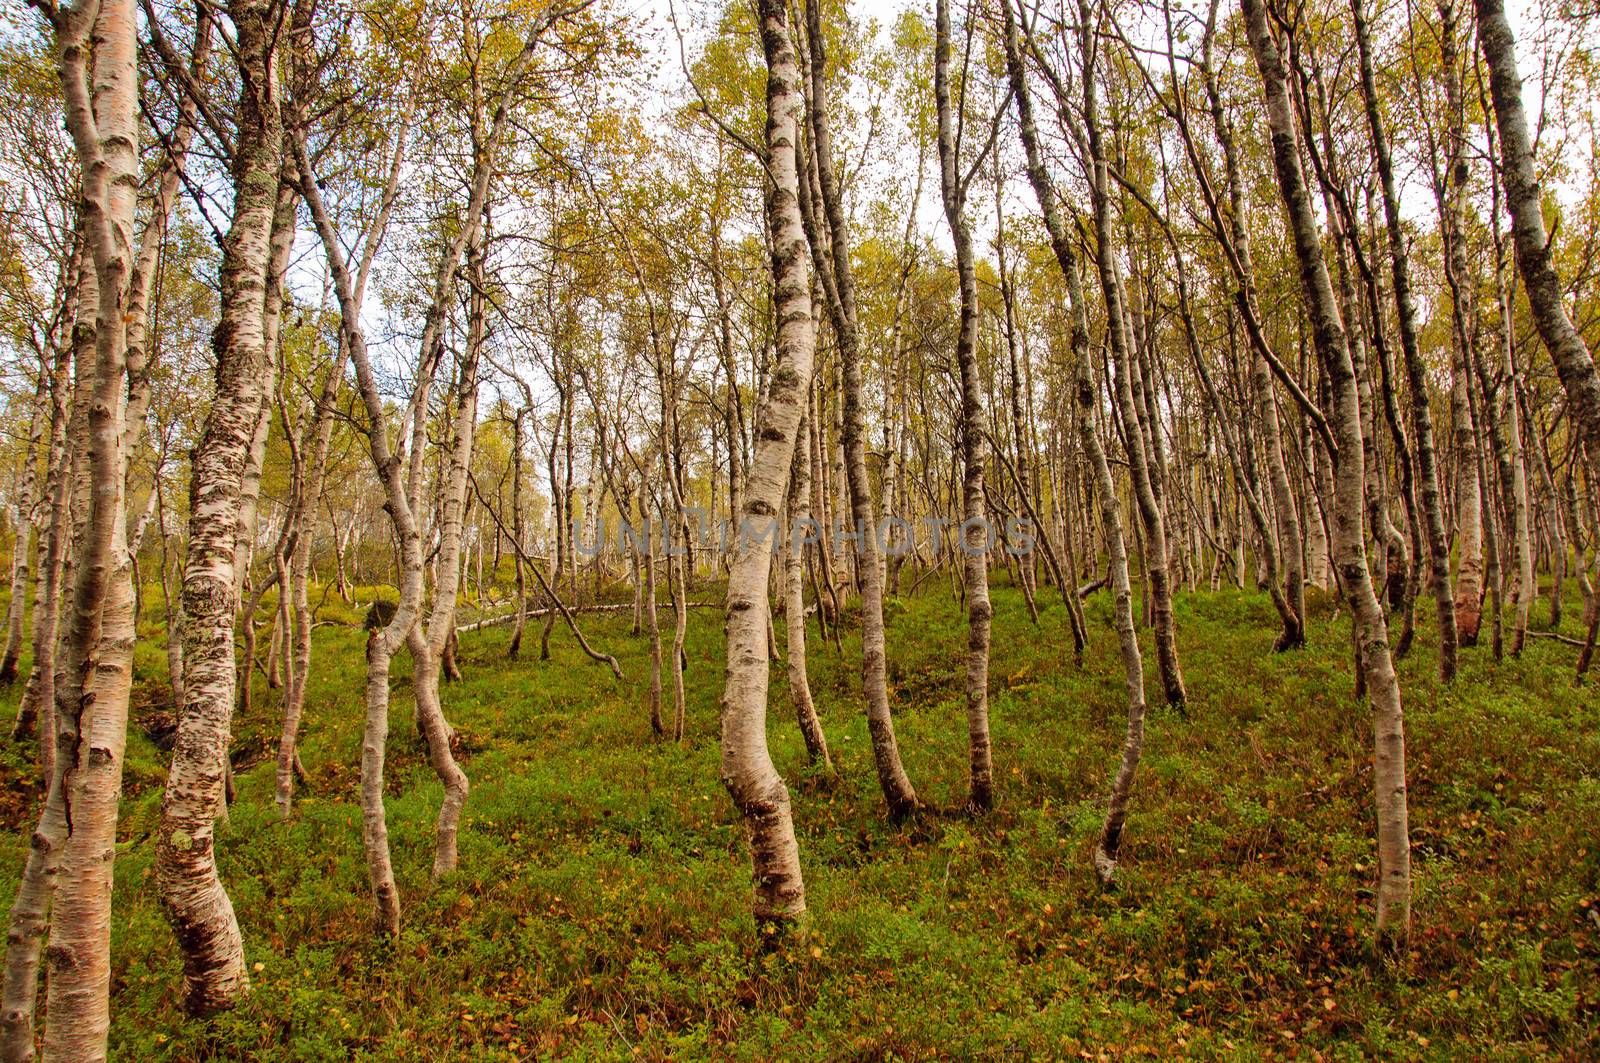 A birch forest floor in autumn